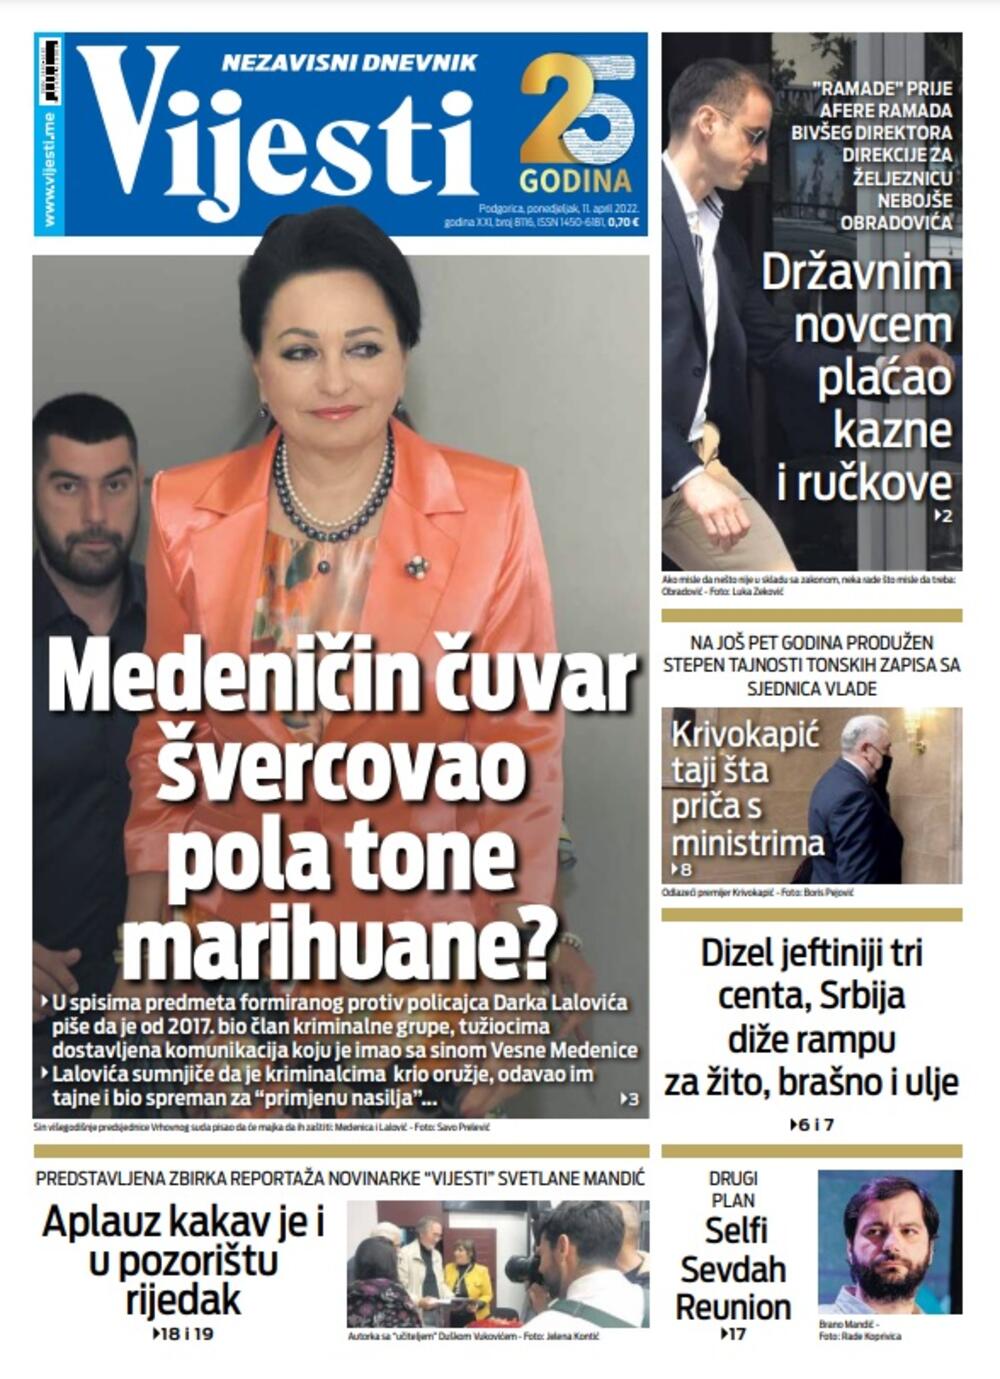 Naslovna strana "Vijesti" za 11. april 2022., Foto: Vijesti